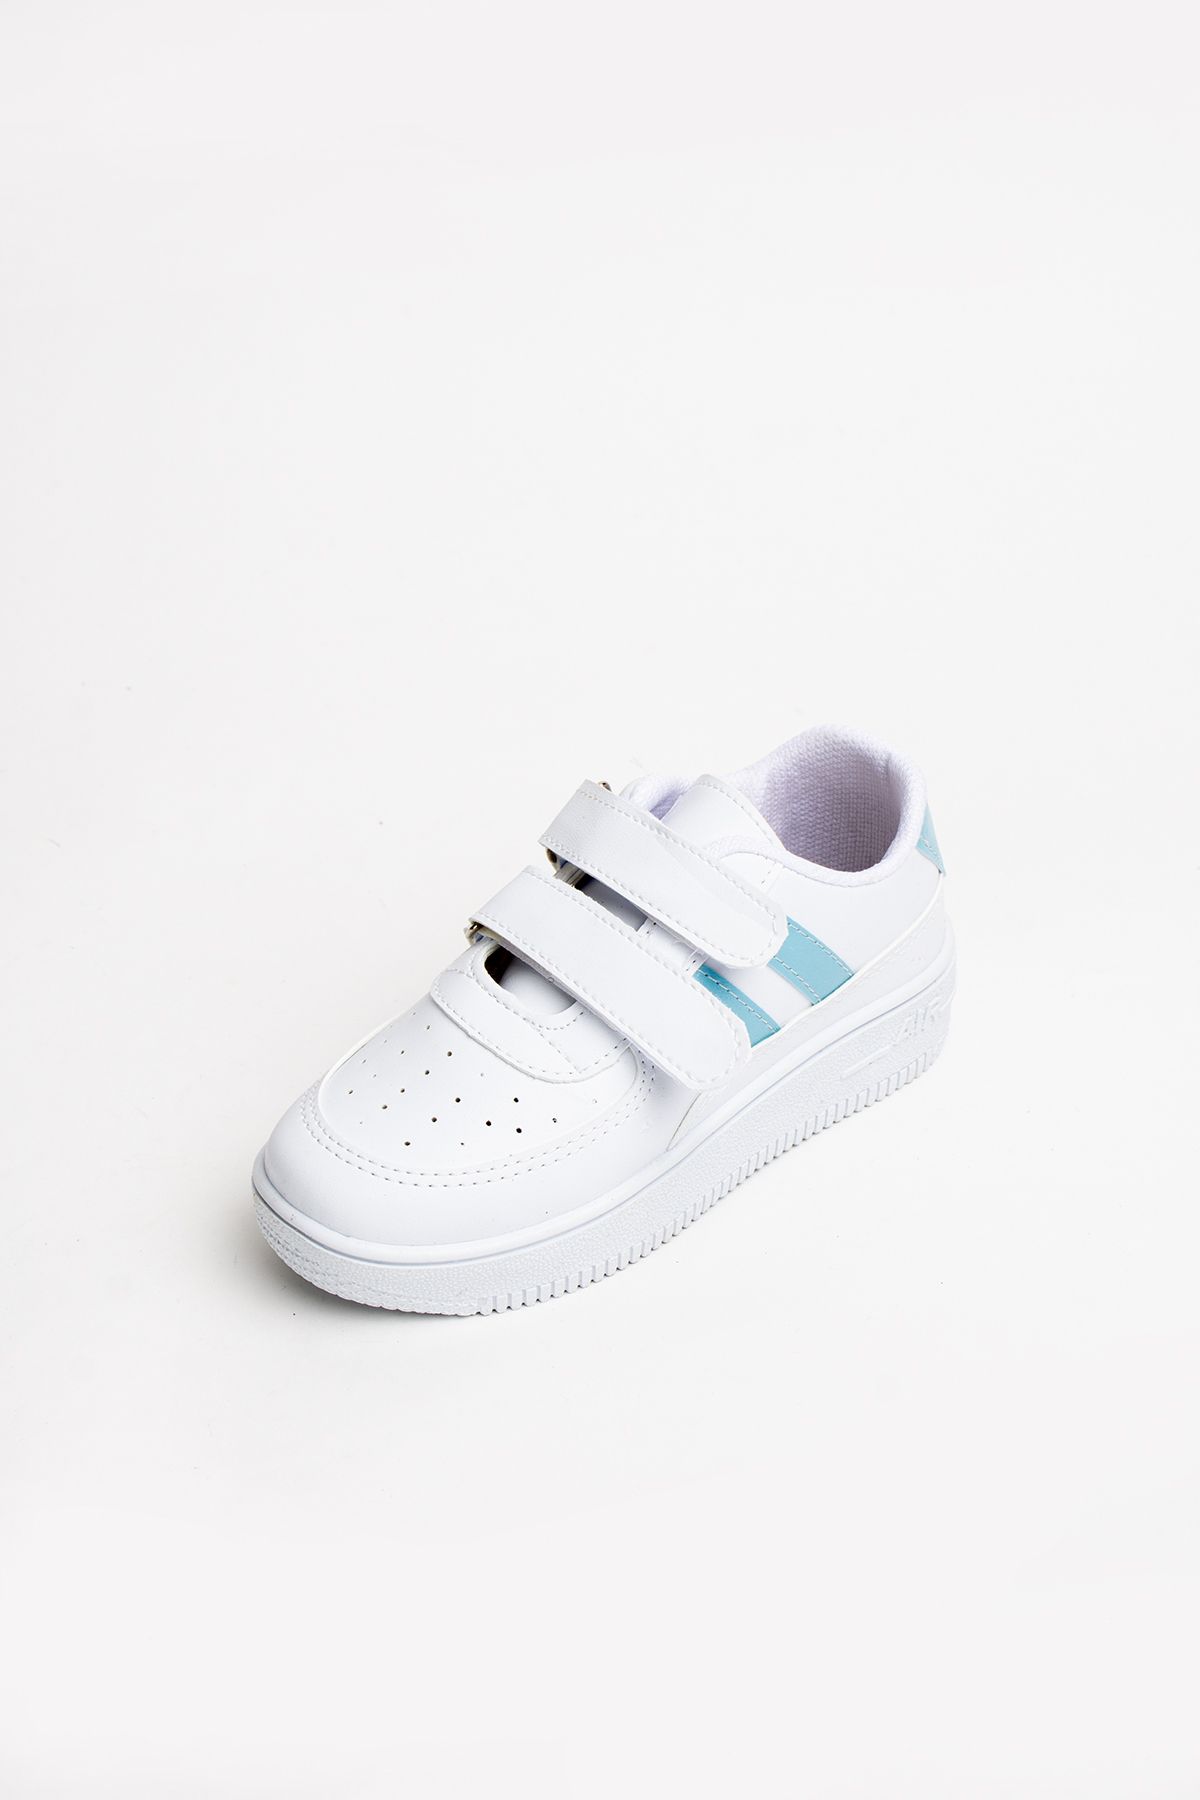 Pembe Potin Çocuk Unisex Beyaz Mavi Sneakers Cırtlı Spor Rahat Çocuk Ayakkabısı